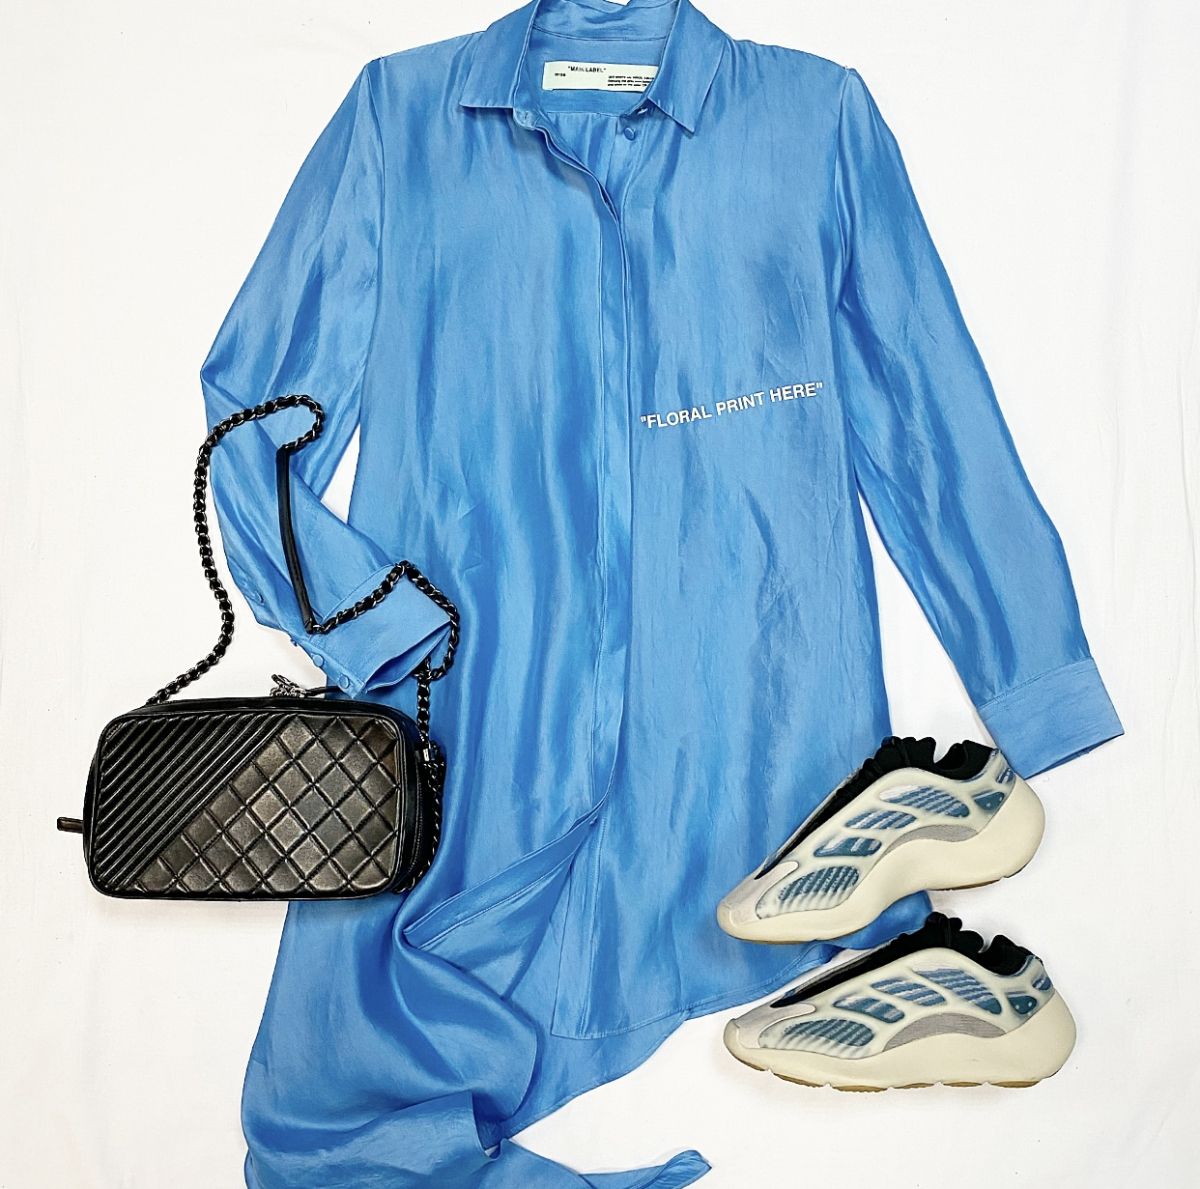 Блузка / удлинённая / Off White размер 40 цена 26 155 руб Кеды Adidas Yeezy размер 39.5 цена 23 078 руб Сумка Chanel